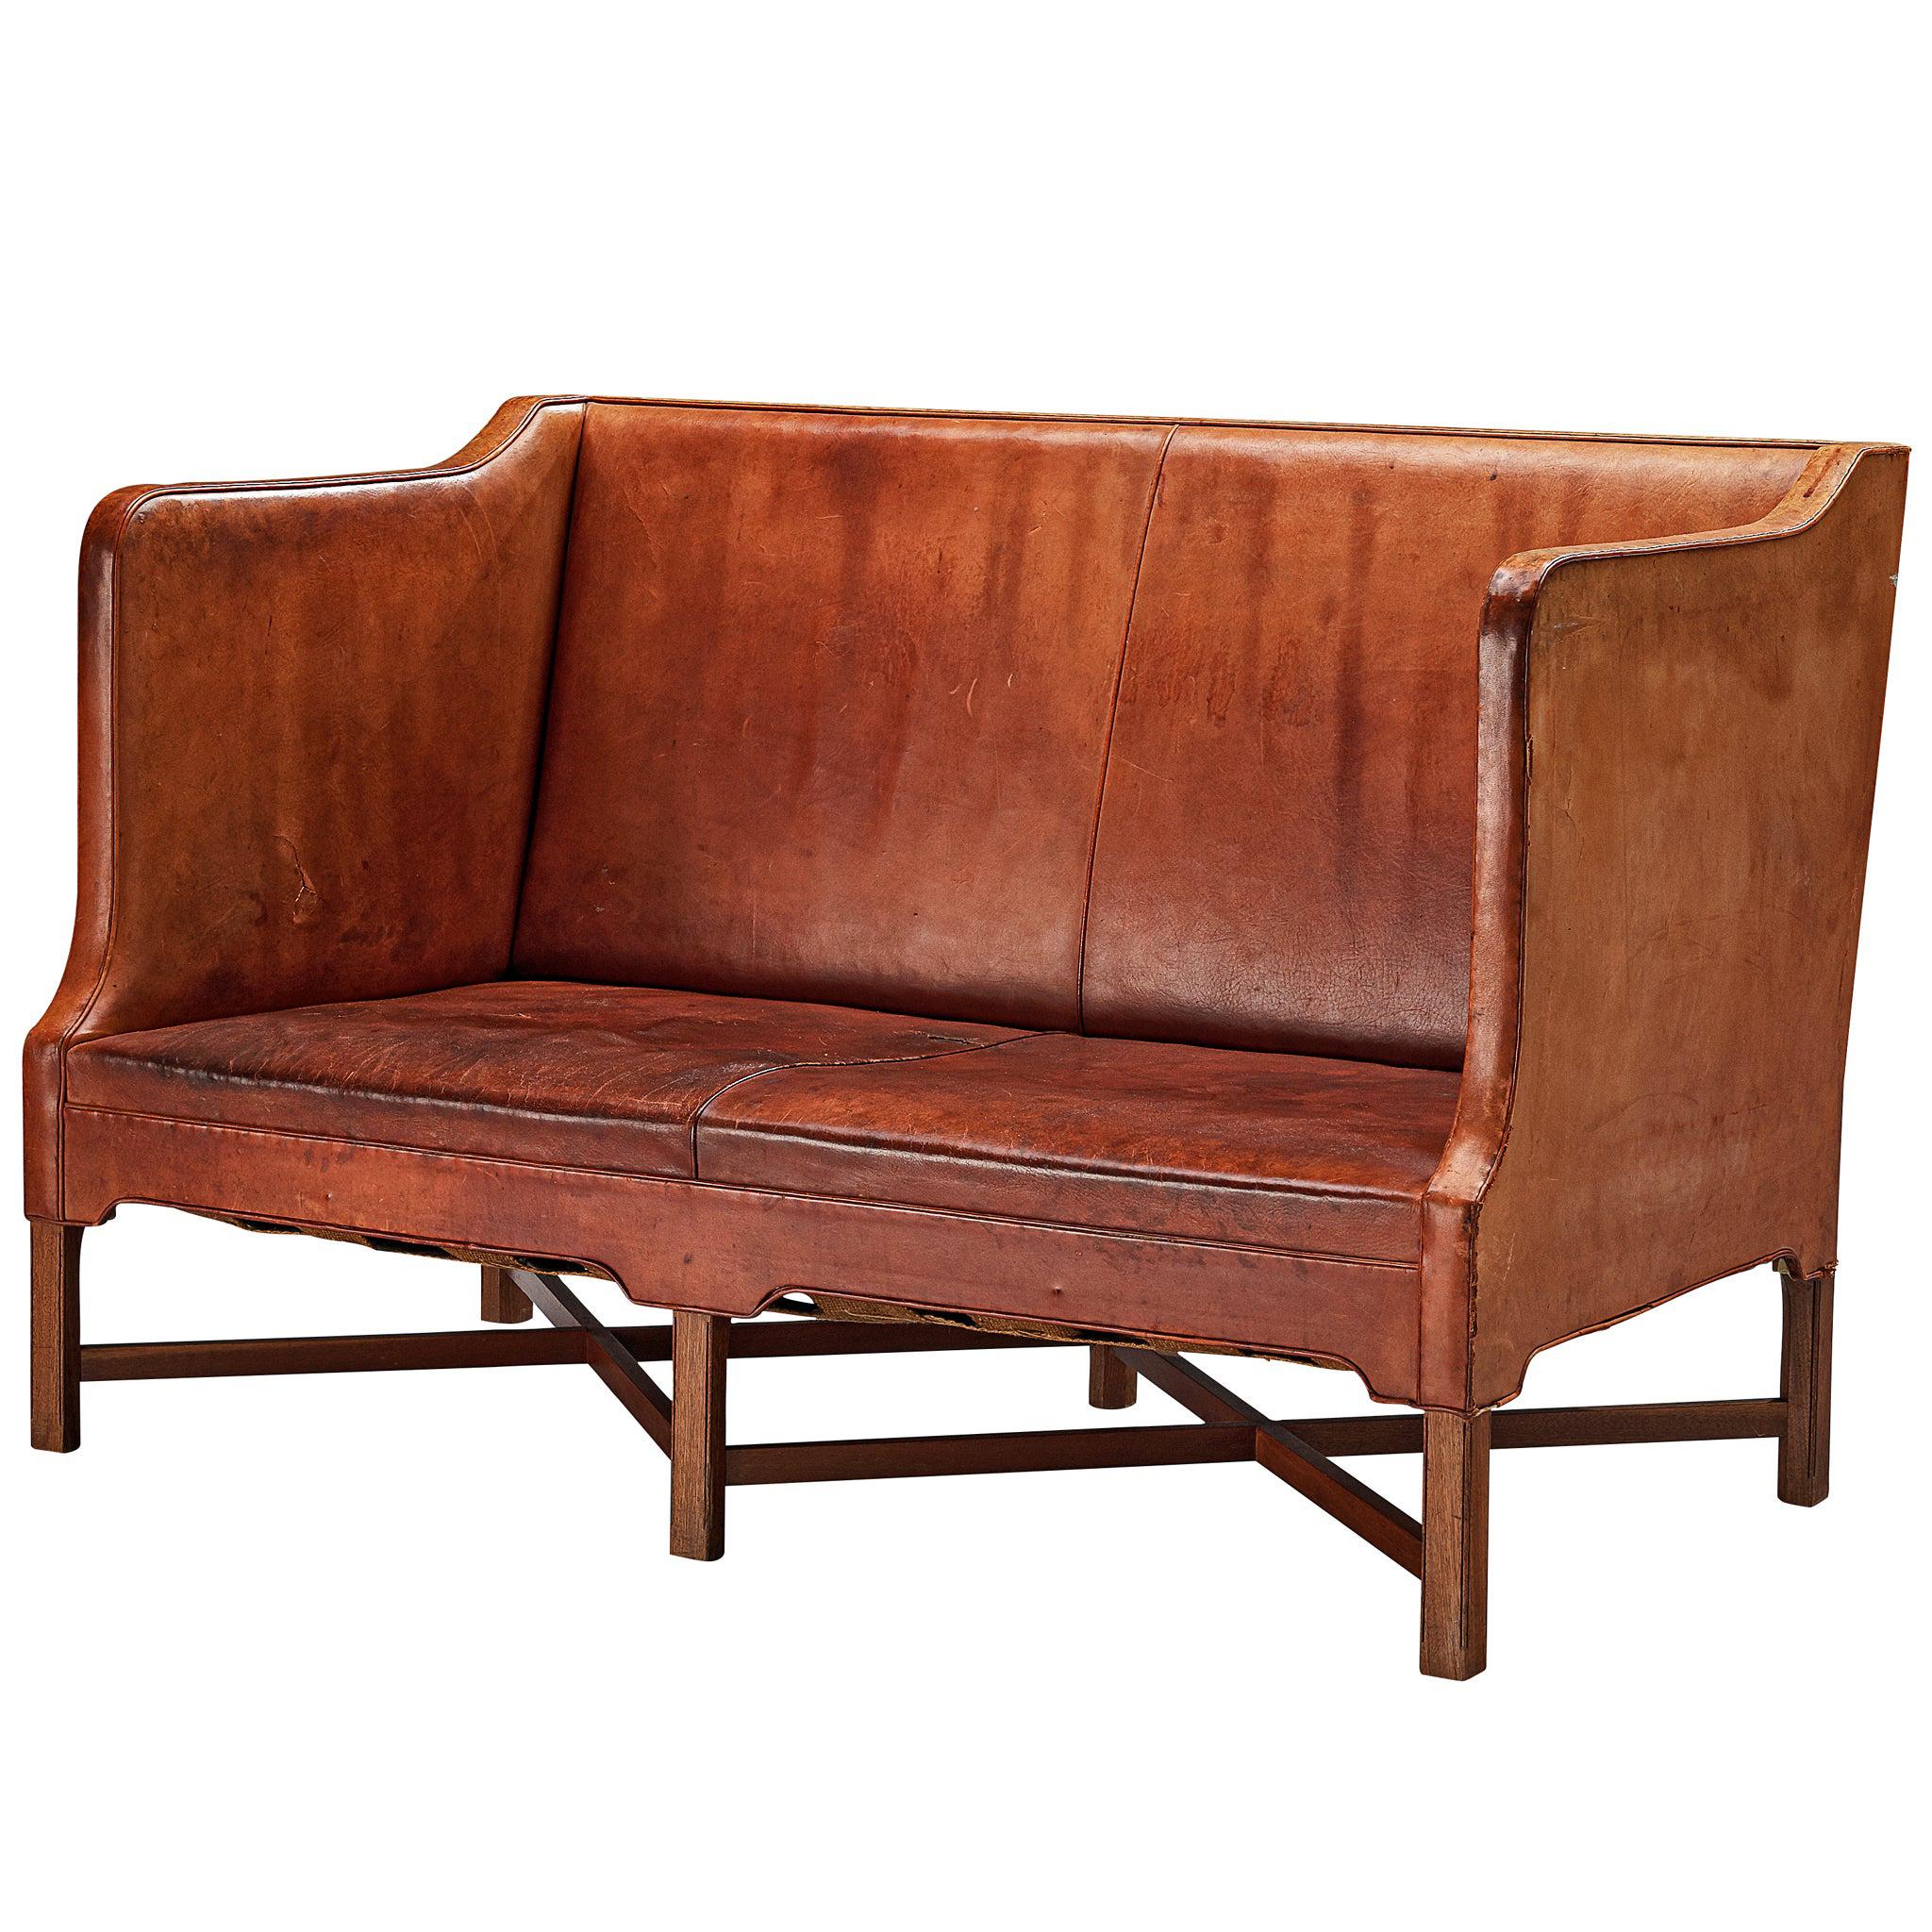 Kaare Klint for Rud Rasmussen Sofa in Original Leather